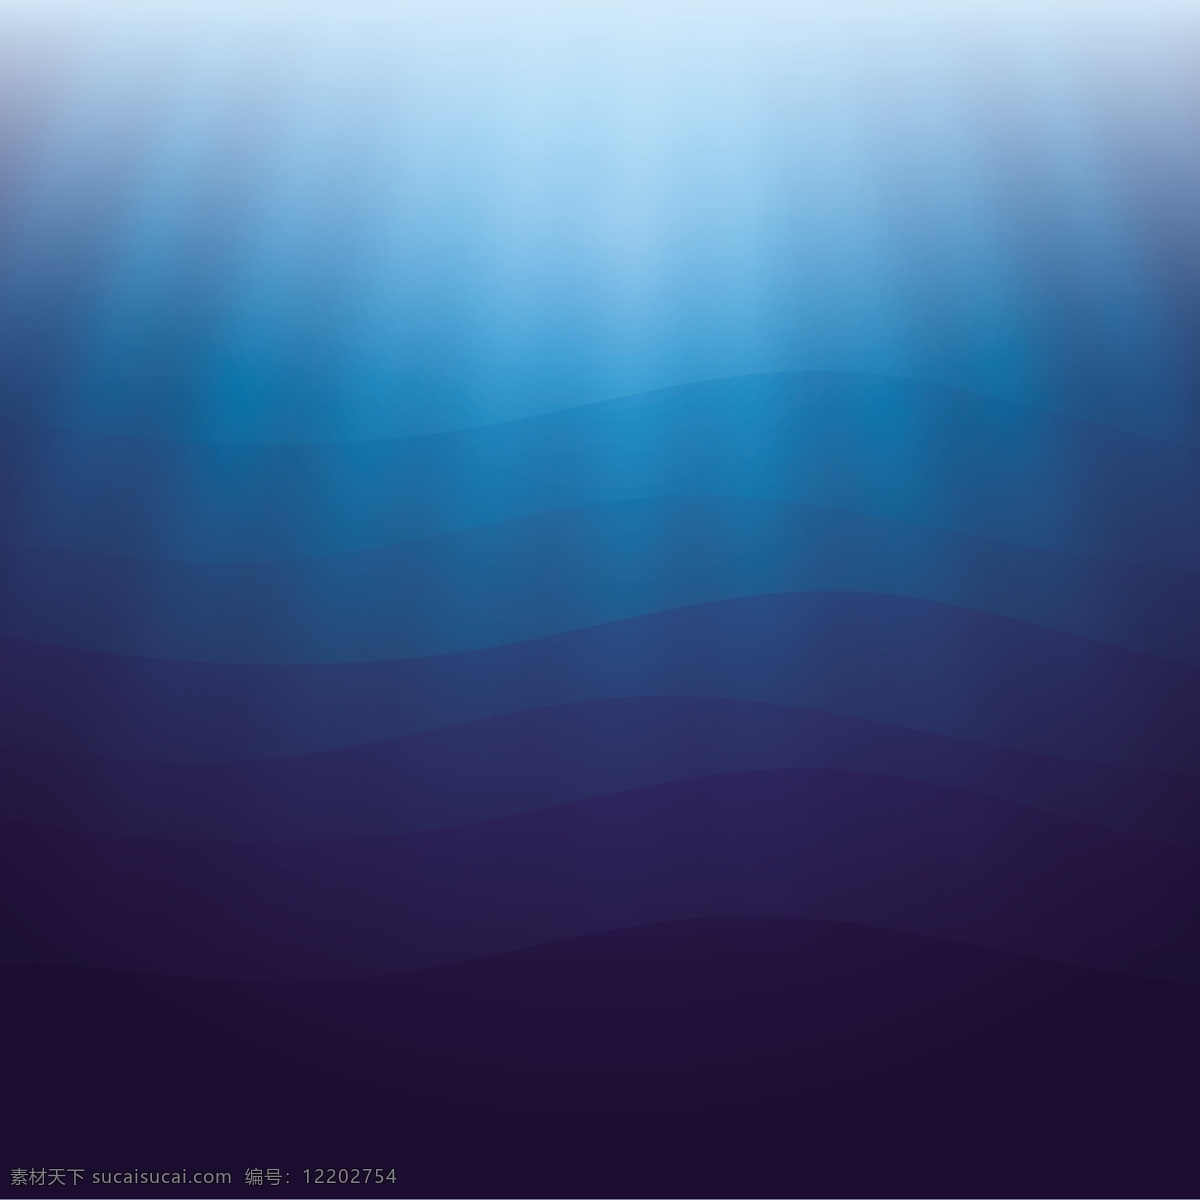 海洋背景 蓝色背景 深海背景 蓝天海洋 阳光穿透海洋 水泡 水珠